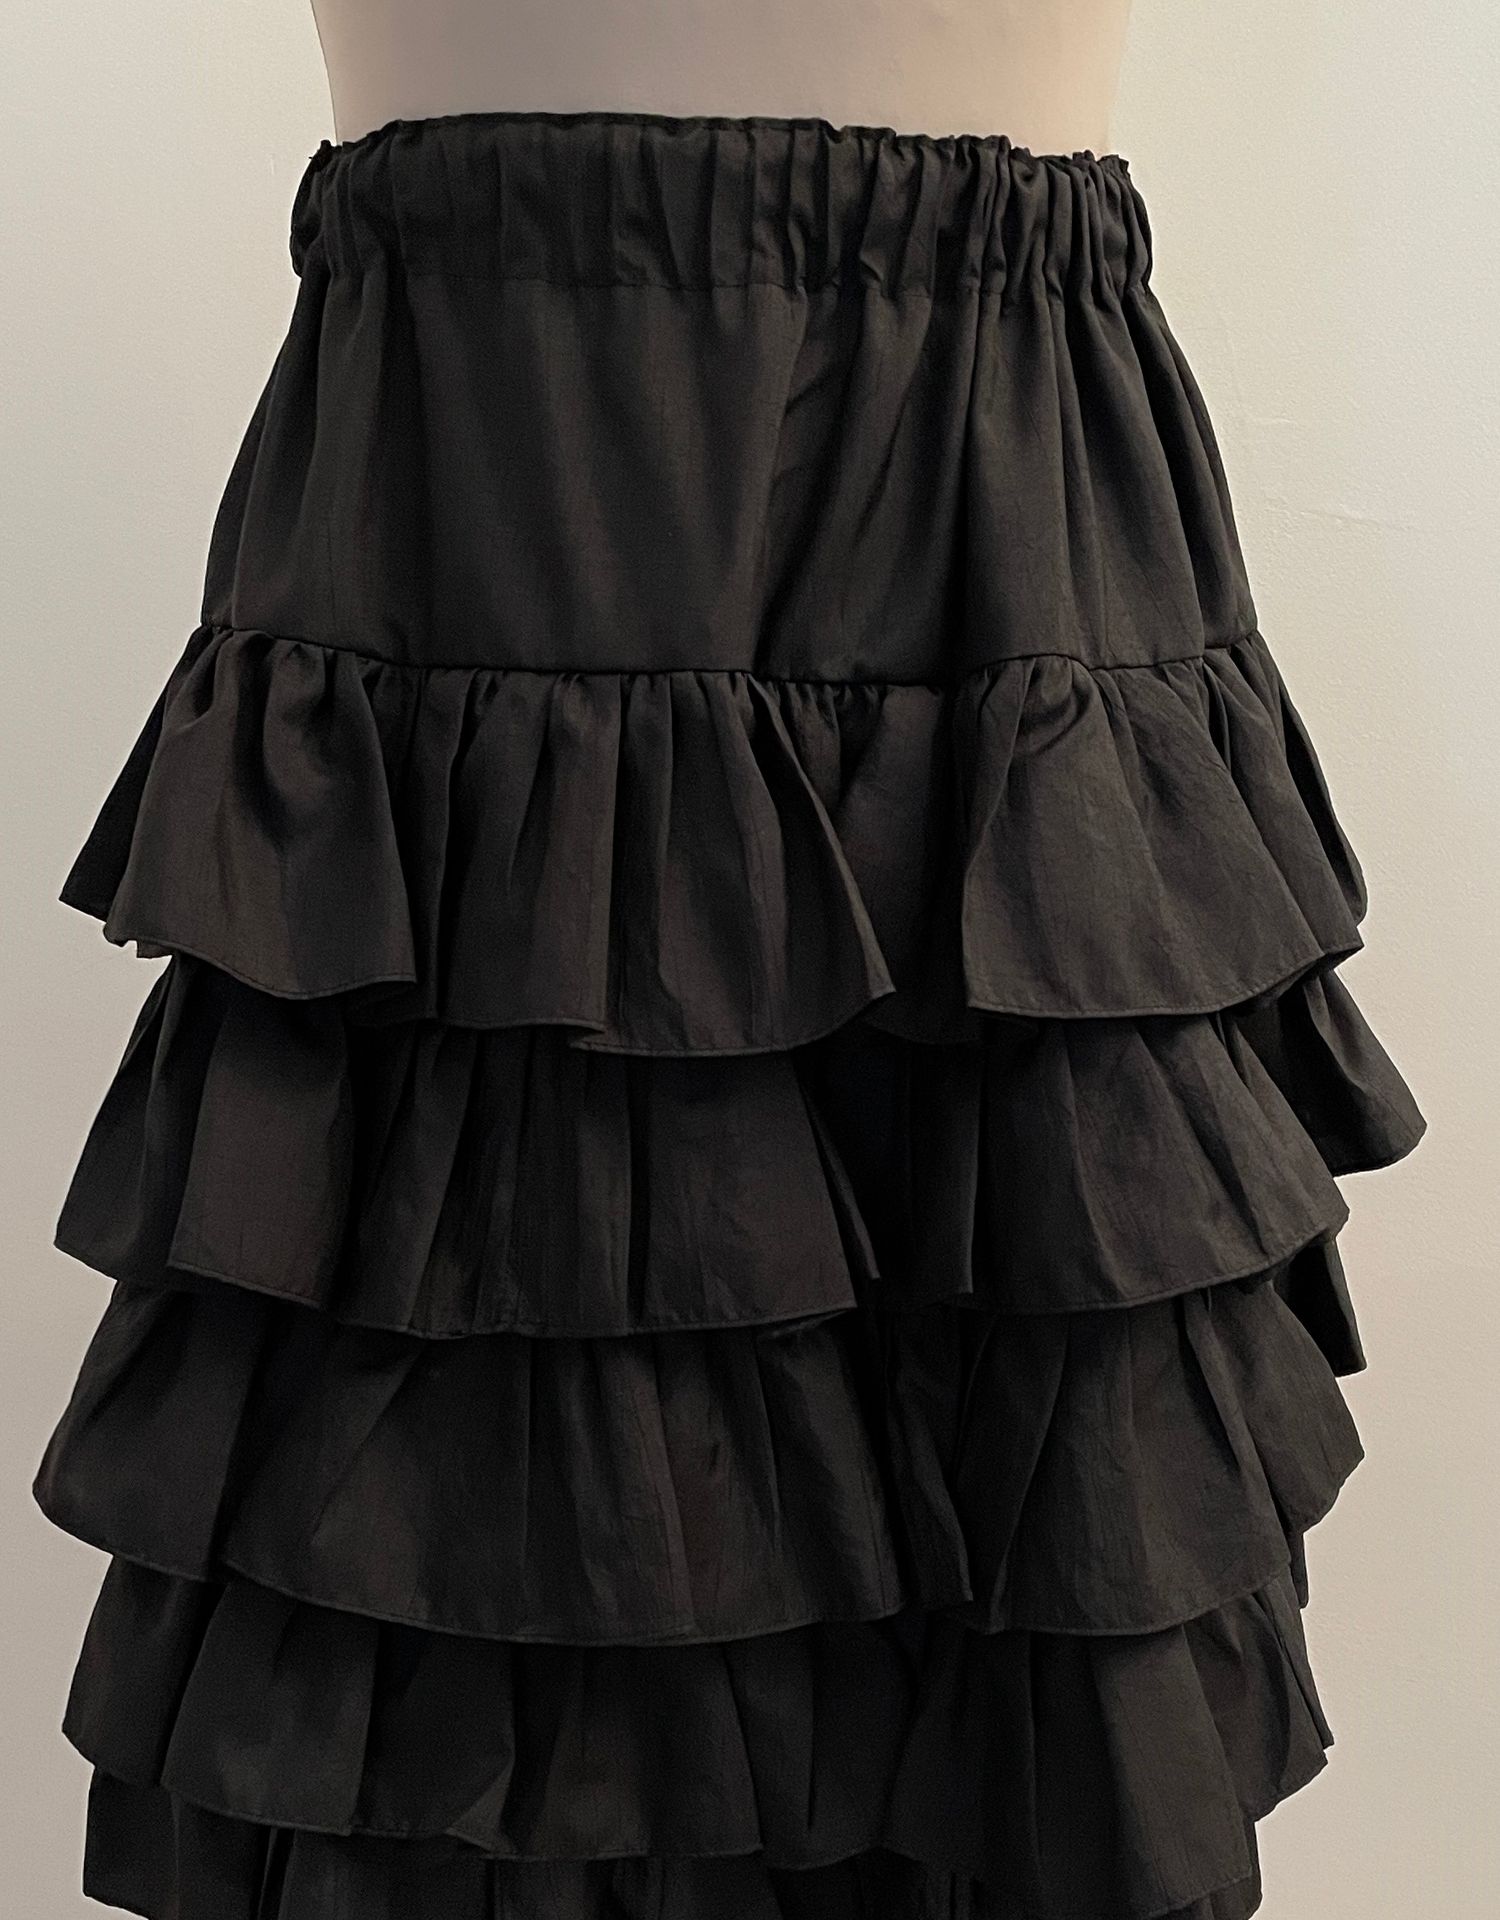 Null 带黑色褶边的裙子。

腰宽30厘米，裙长56厘米